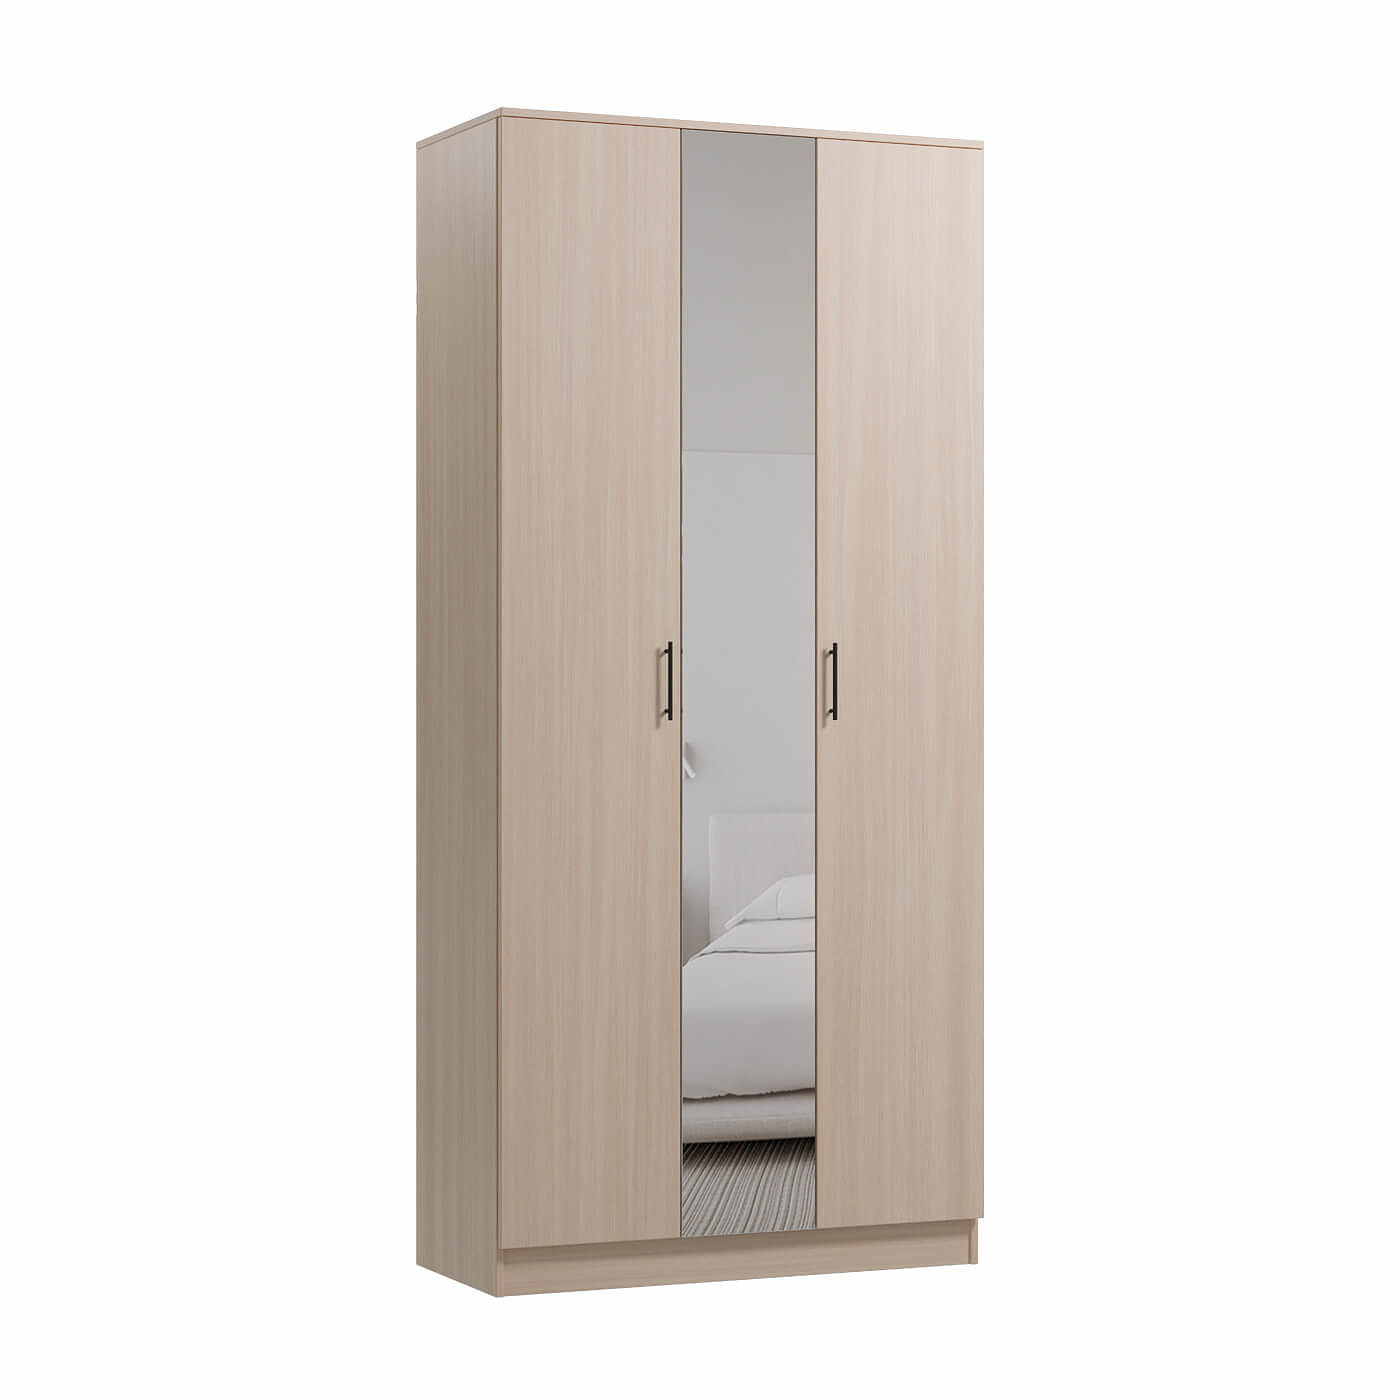 Шкаф Барри-200b современный для прихожей и спальни - фото 1 large